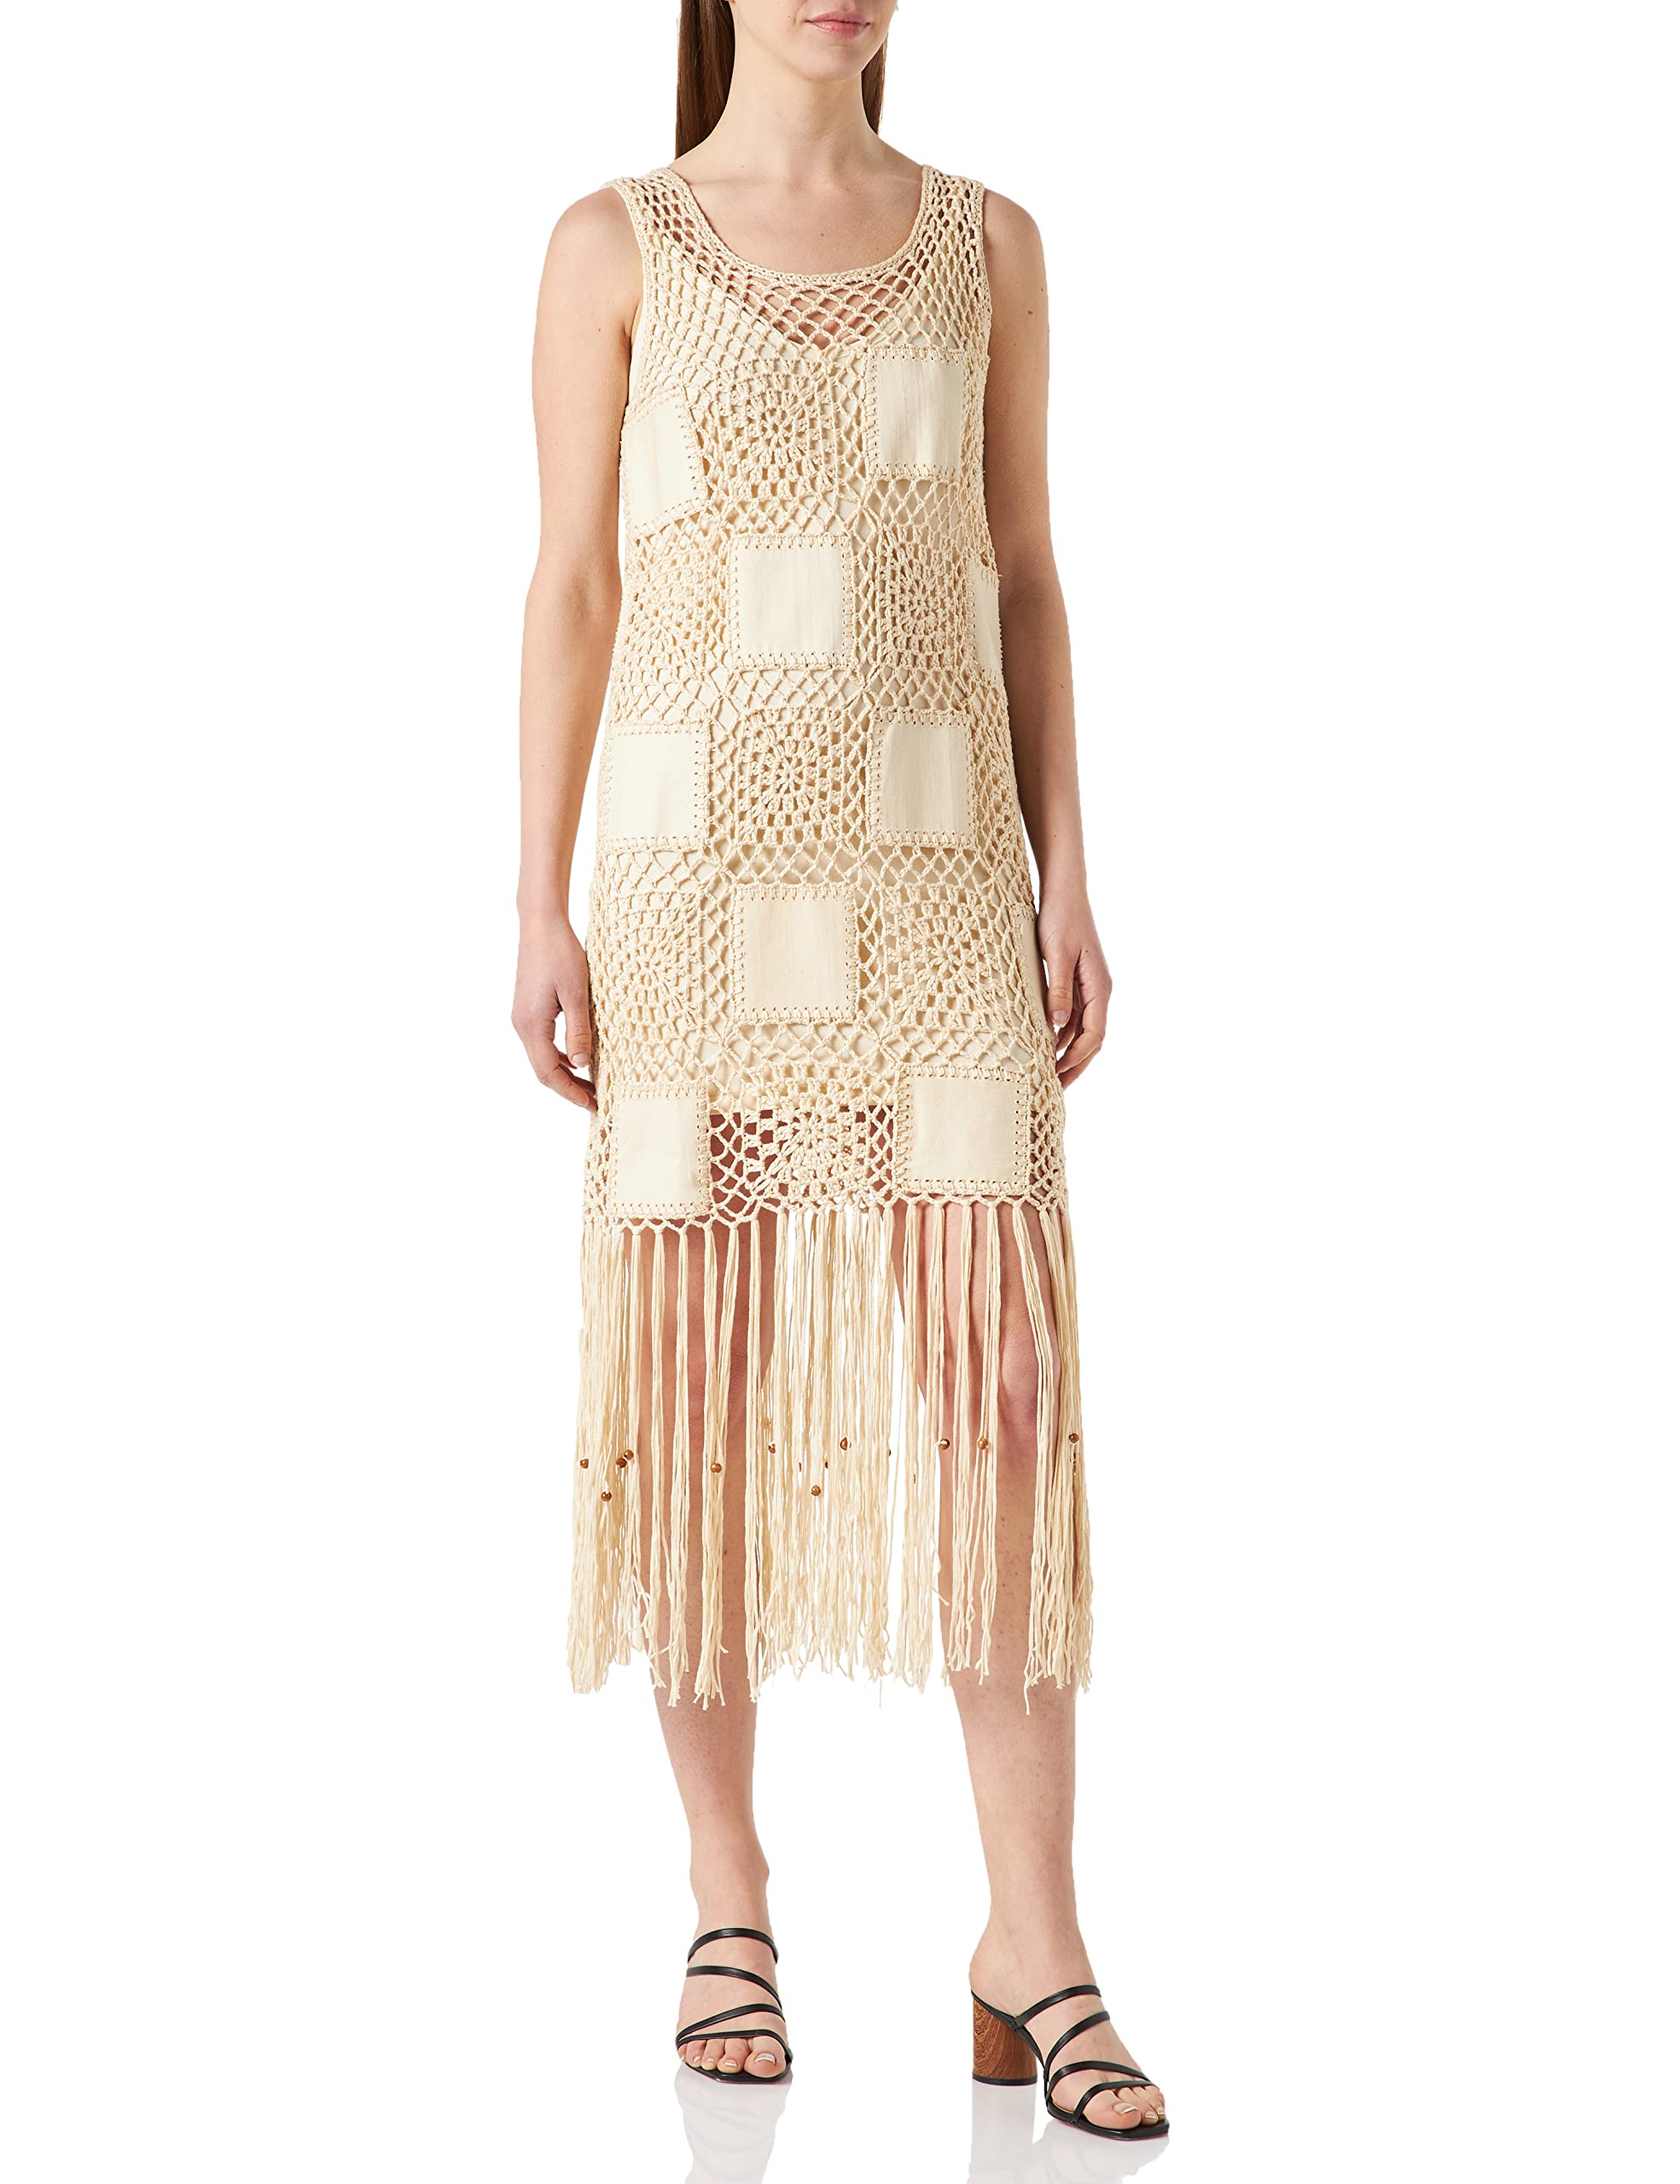 Desigual Damen Vest_San Diego Kleid, Weiß (Crudo 1001), Small (Herstellergröße:S)